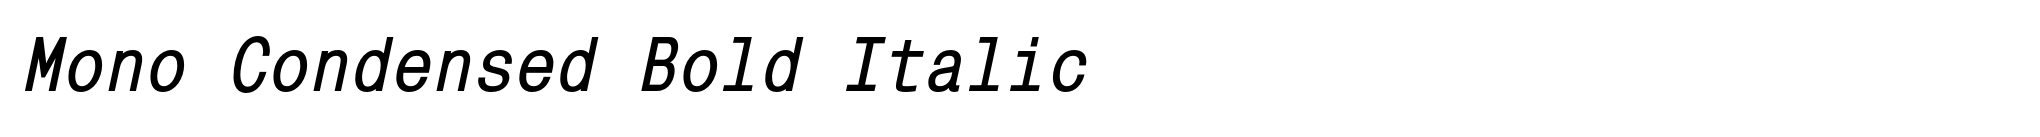 Mono Condensed Bold Italic image